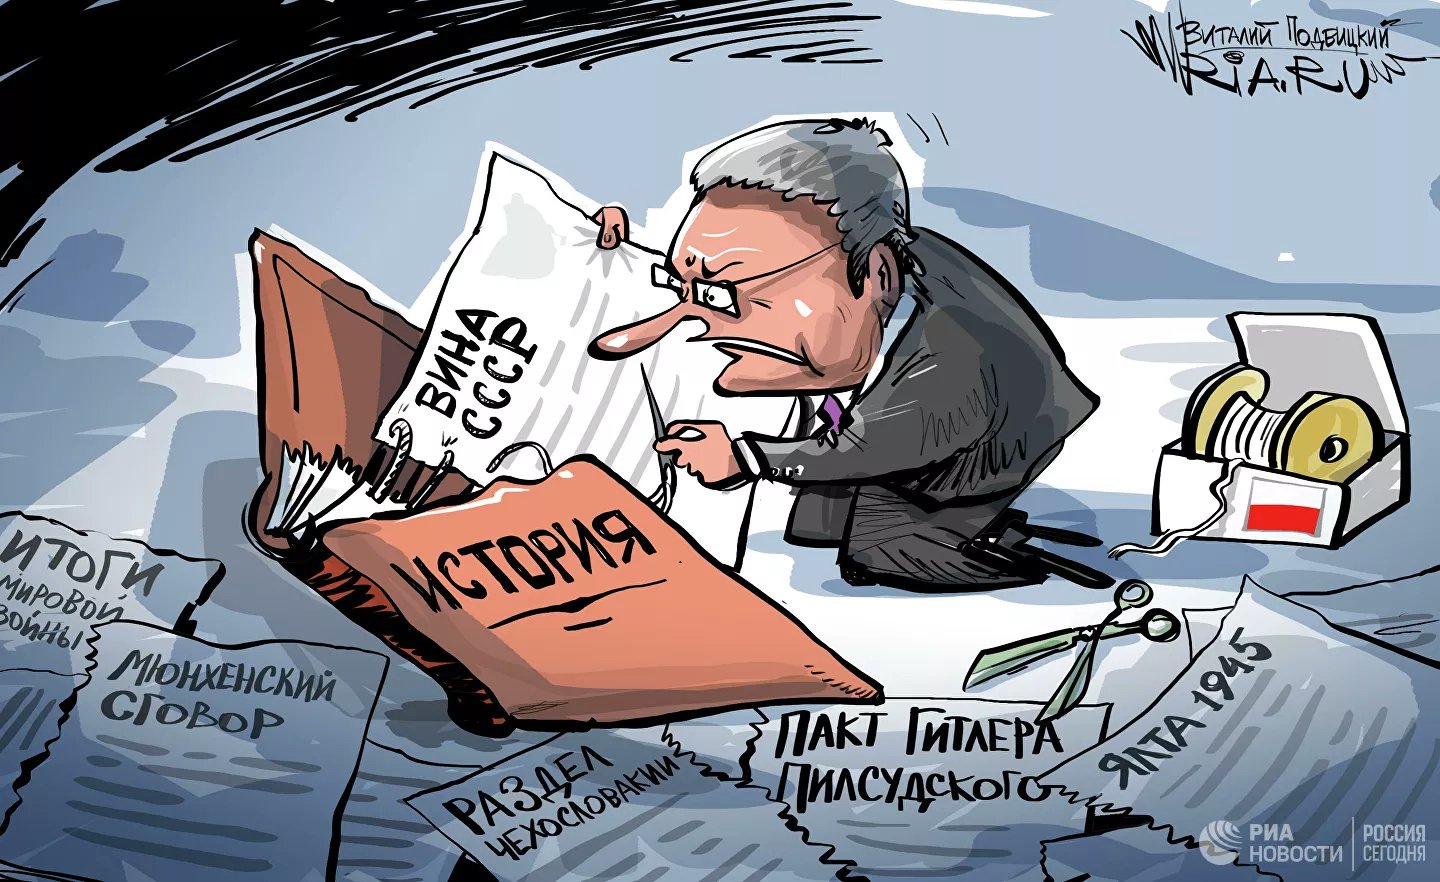 Карикатура "Историческое беспамятство", Виталий Подвицкий